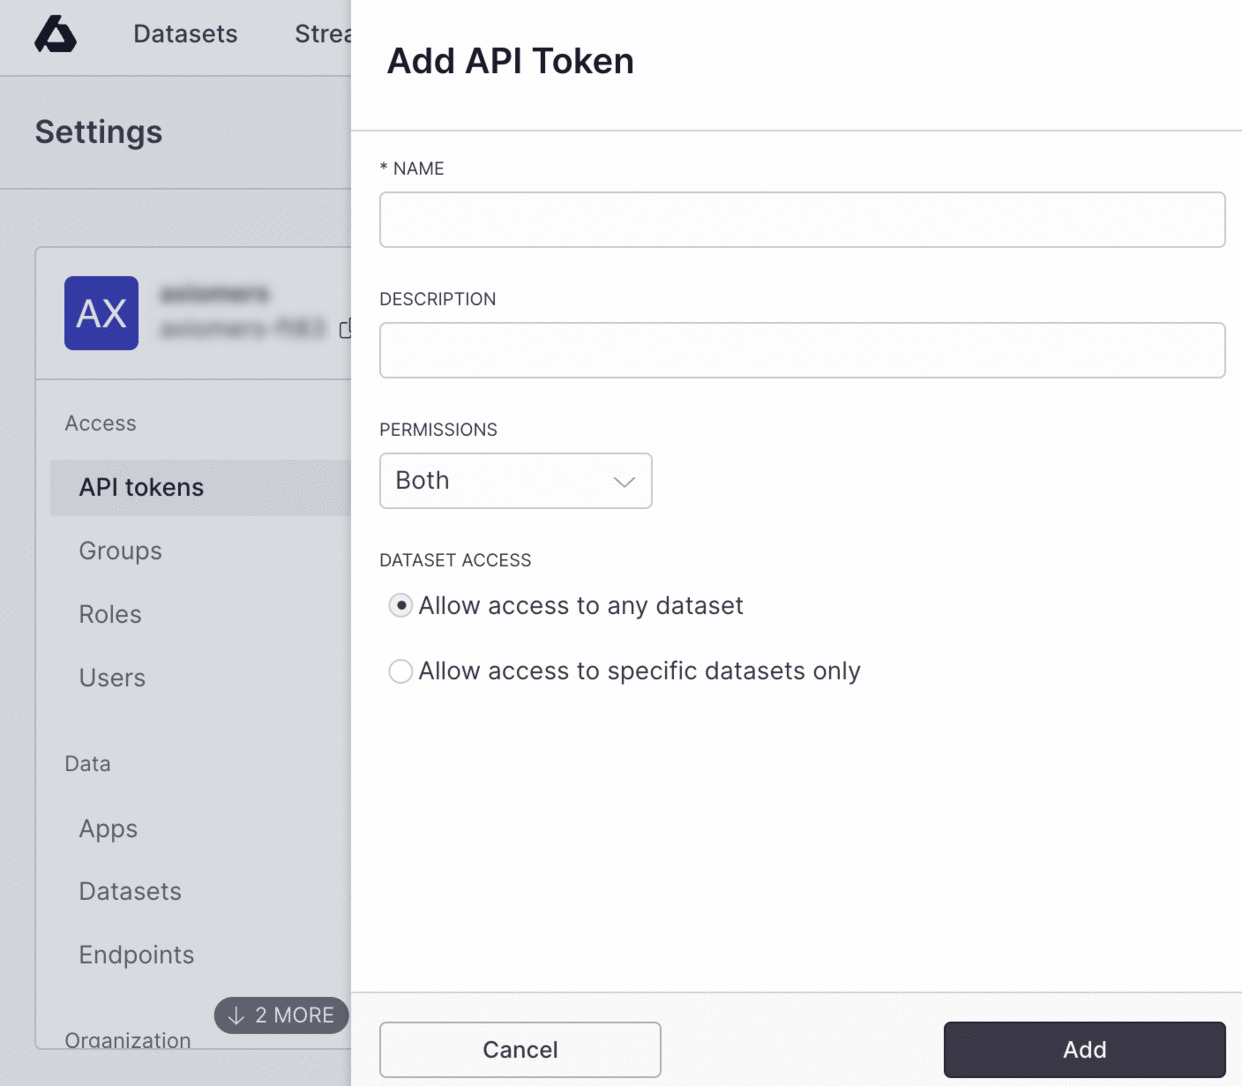 Create API Token